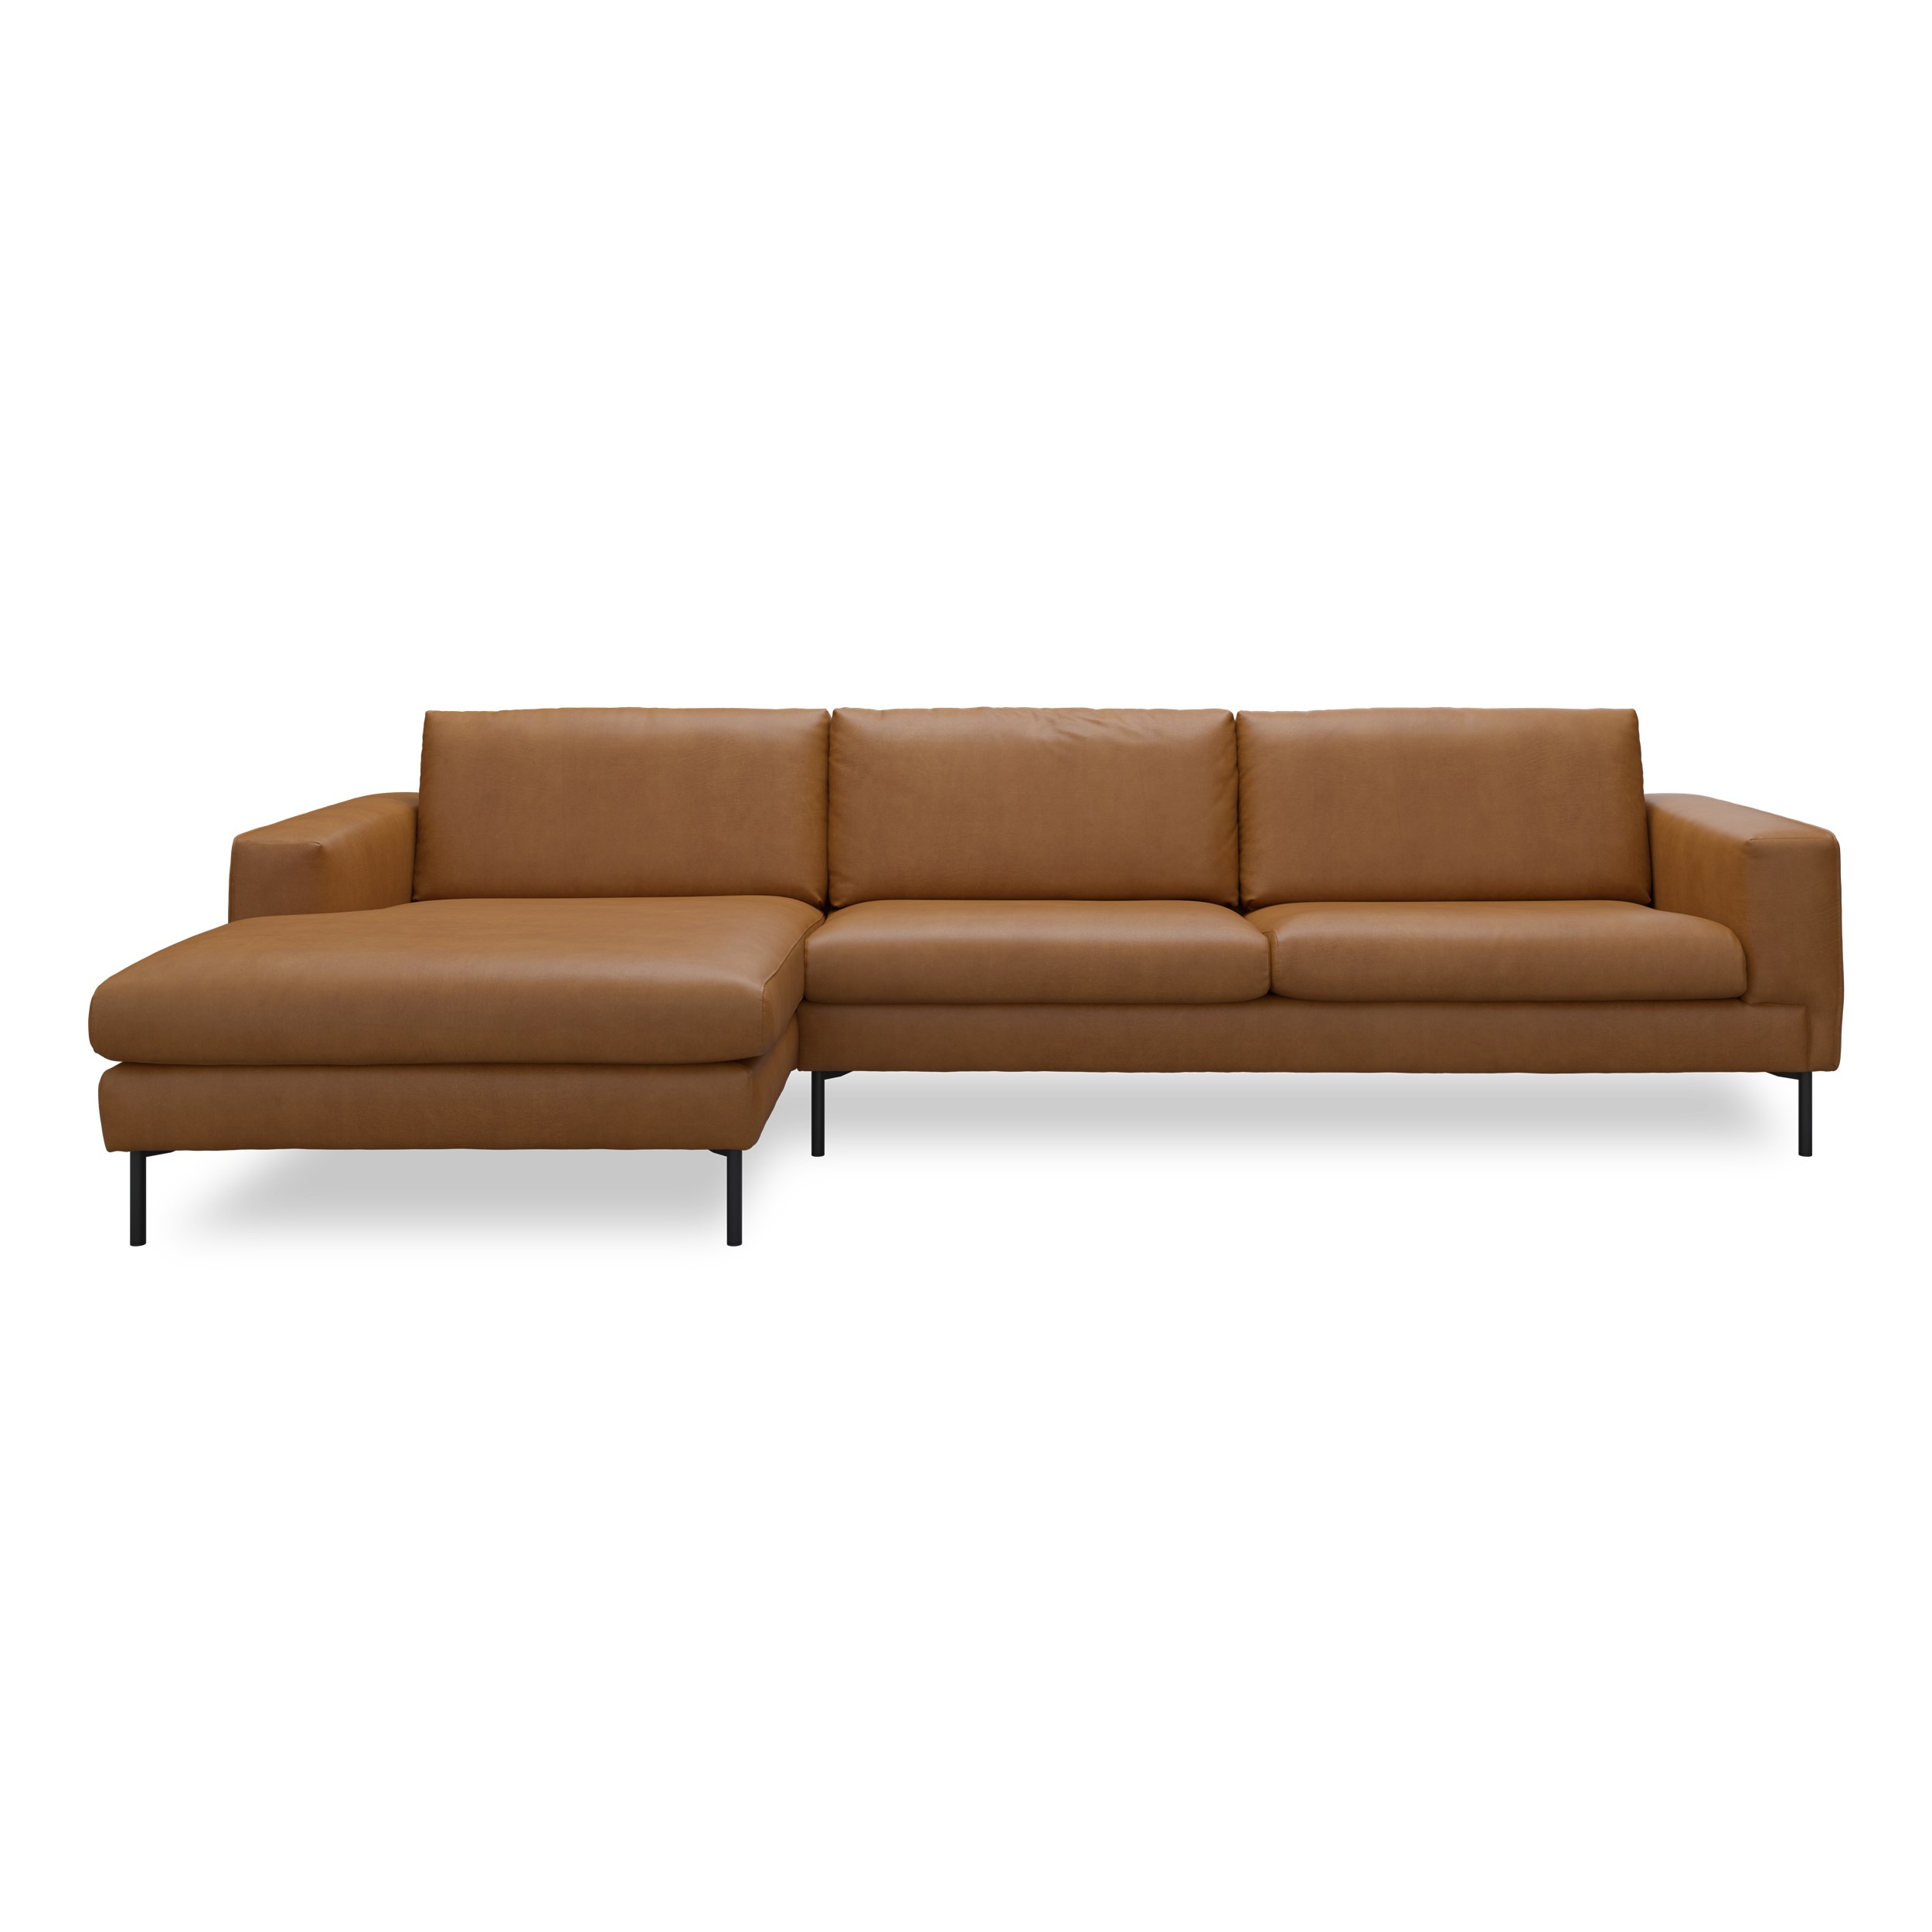 Nyland venstrevendt sofa med chaiselong - Kentucky 9 cognac bonded læder, Ben no. 145 i sortlakeret metal og S: Koldskum R:Koldskum med fiberfyld